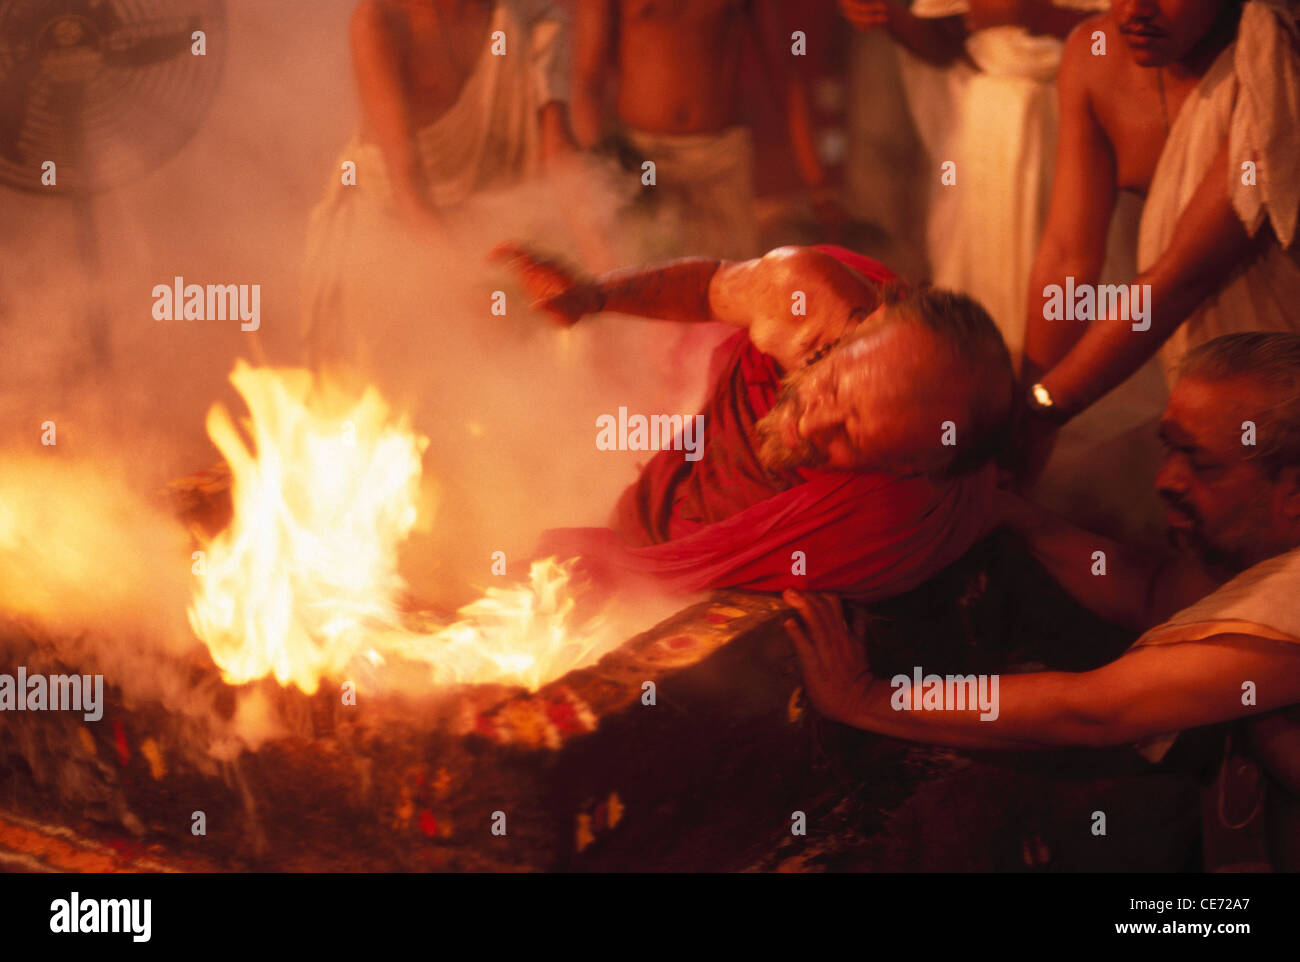 SOA 81799 : India india Jain sacerdote baño fuego Fotografía de stock -